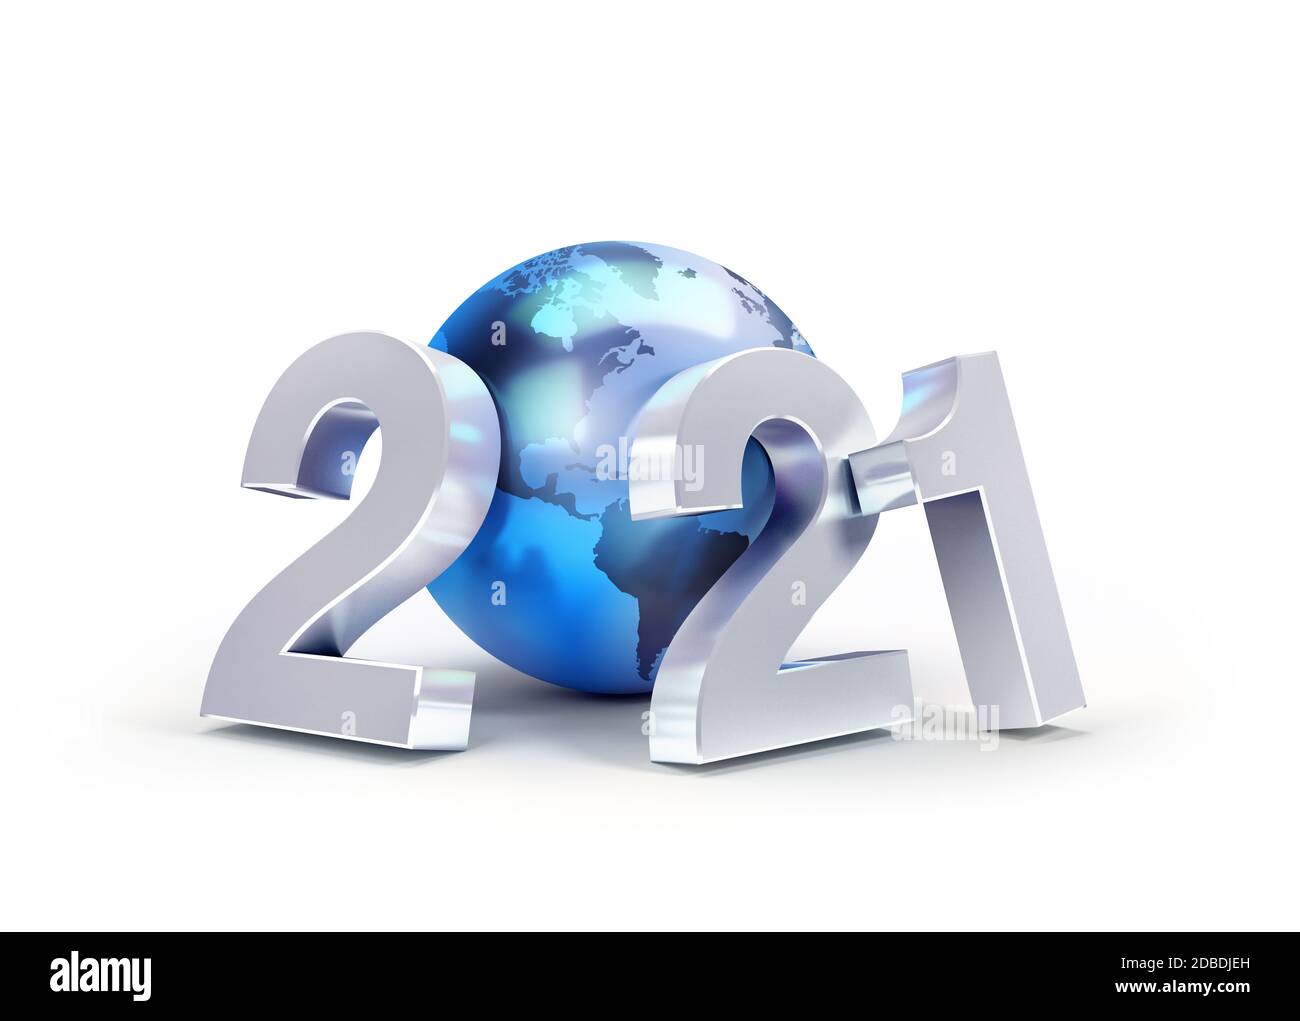 2021 año Nuevo número de fecha compuesto con un planeta azul tierra, centrado en América, aislado en blanco - ilustración 3D Foto de stock